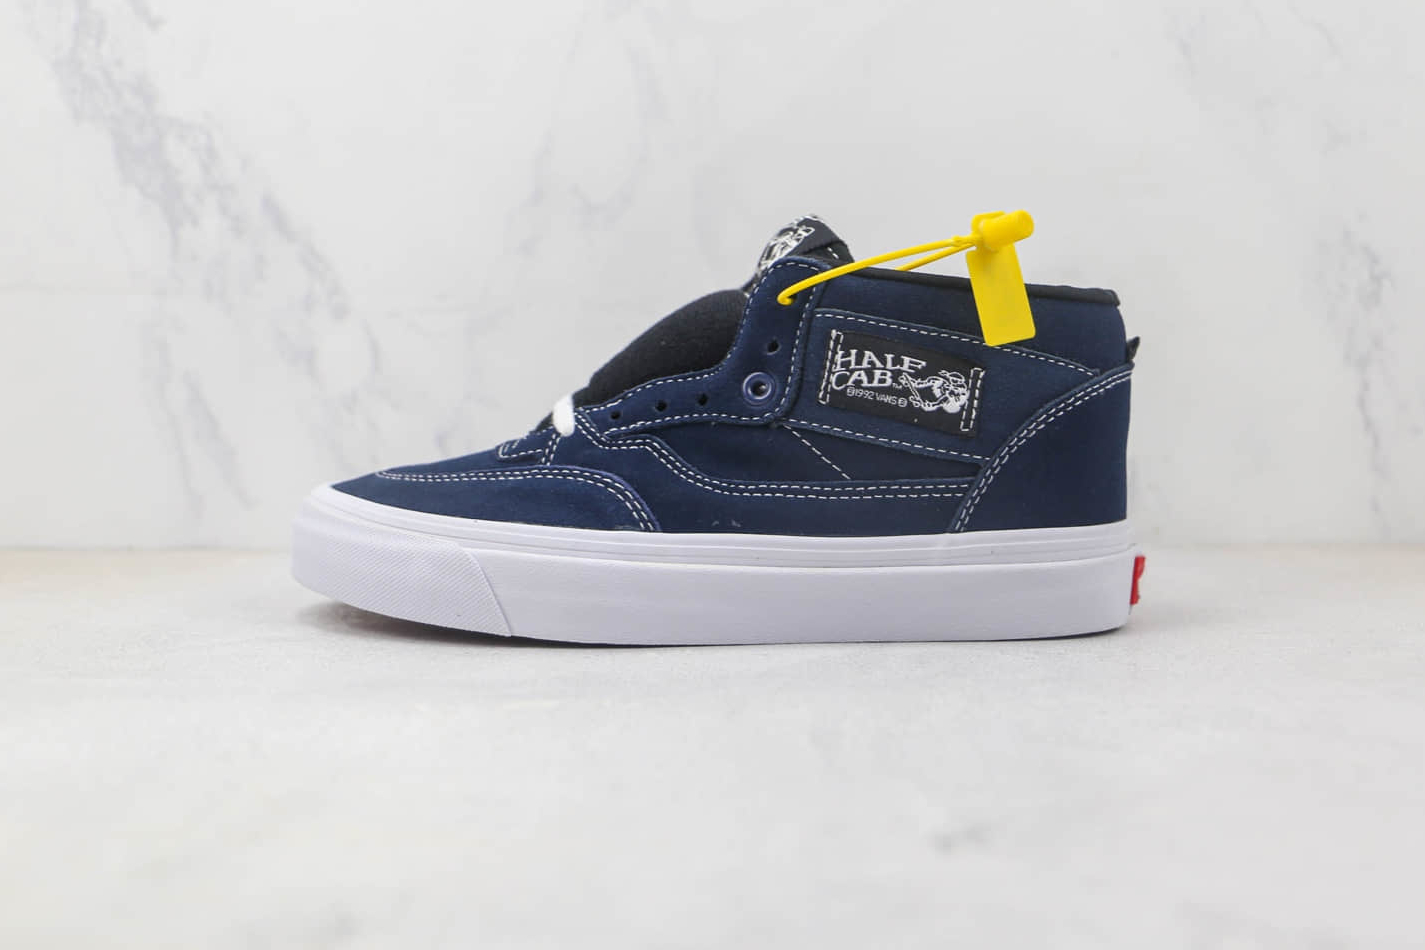 Vans Half Cab 92 Dress Blues – Authentic Skate Shoe